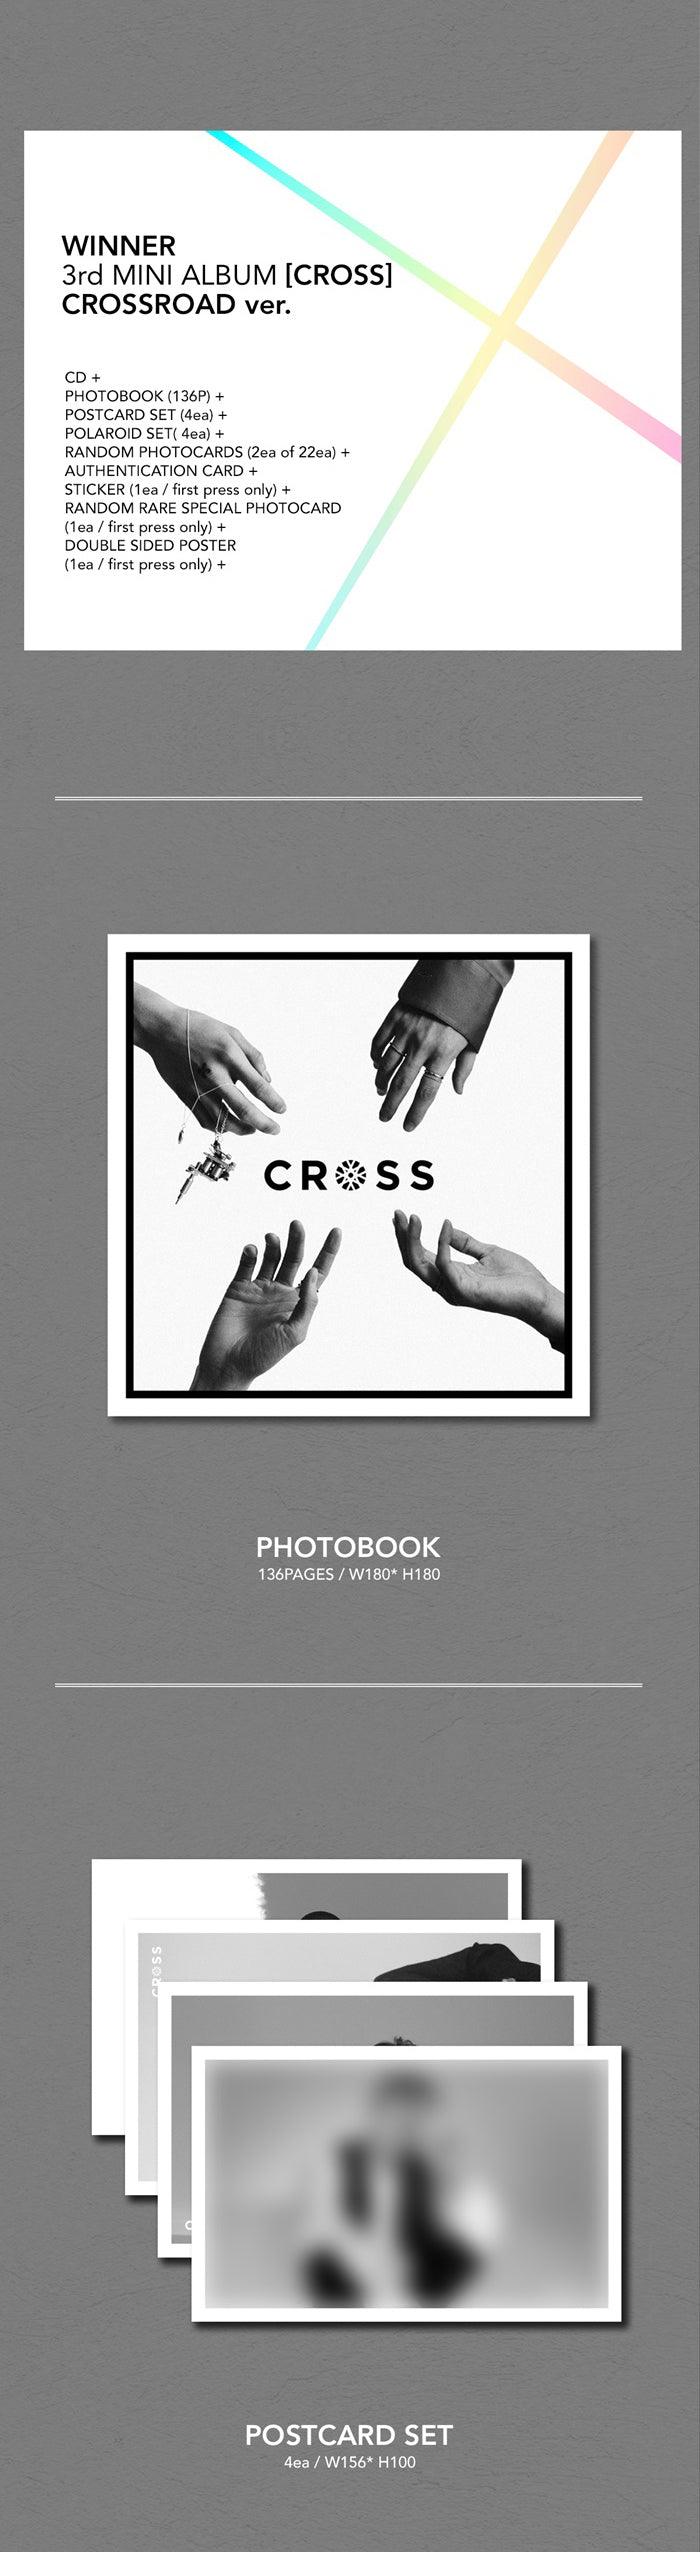 WINNER - Cross (3rd Mini Album) - J-Store Online